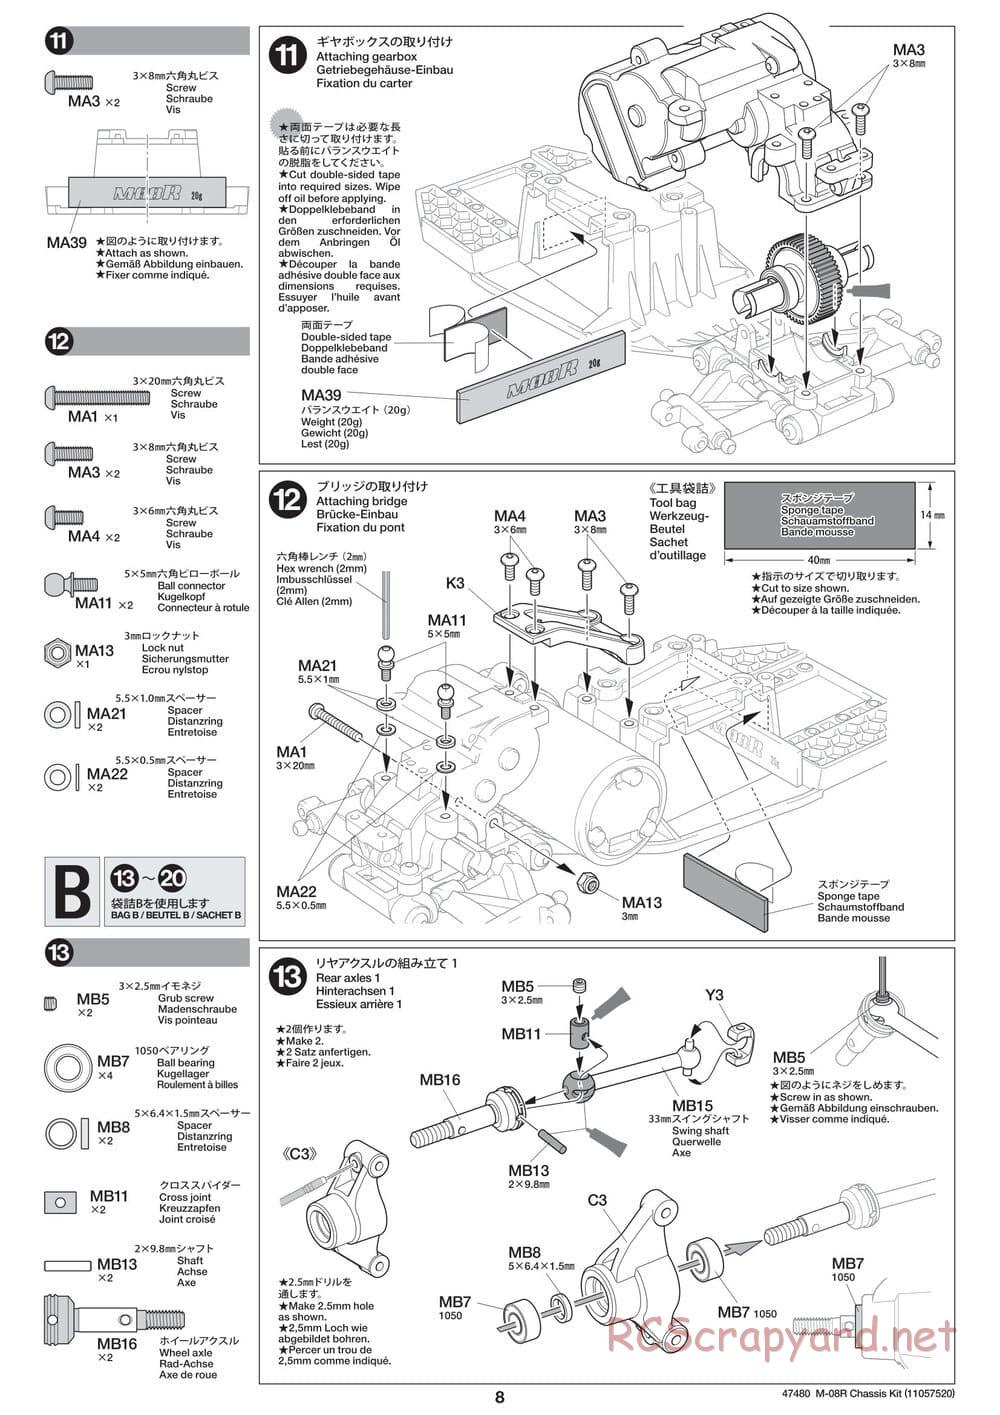 Tamiya - M-08R Chassis - Manual - Page 8